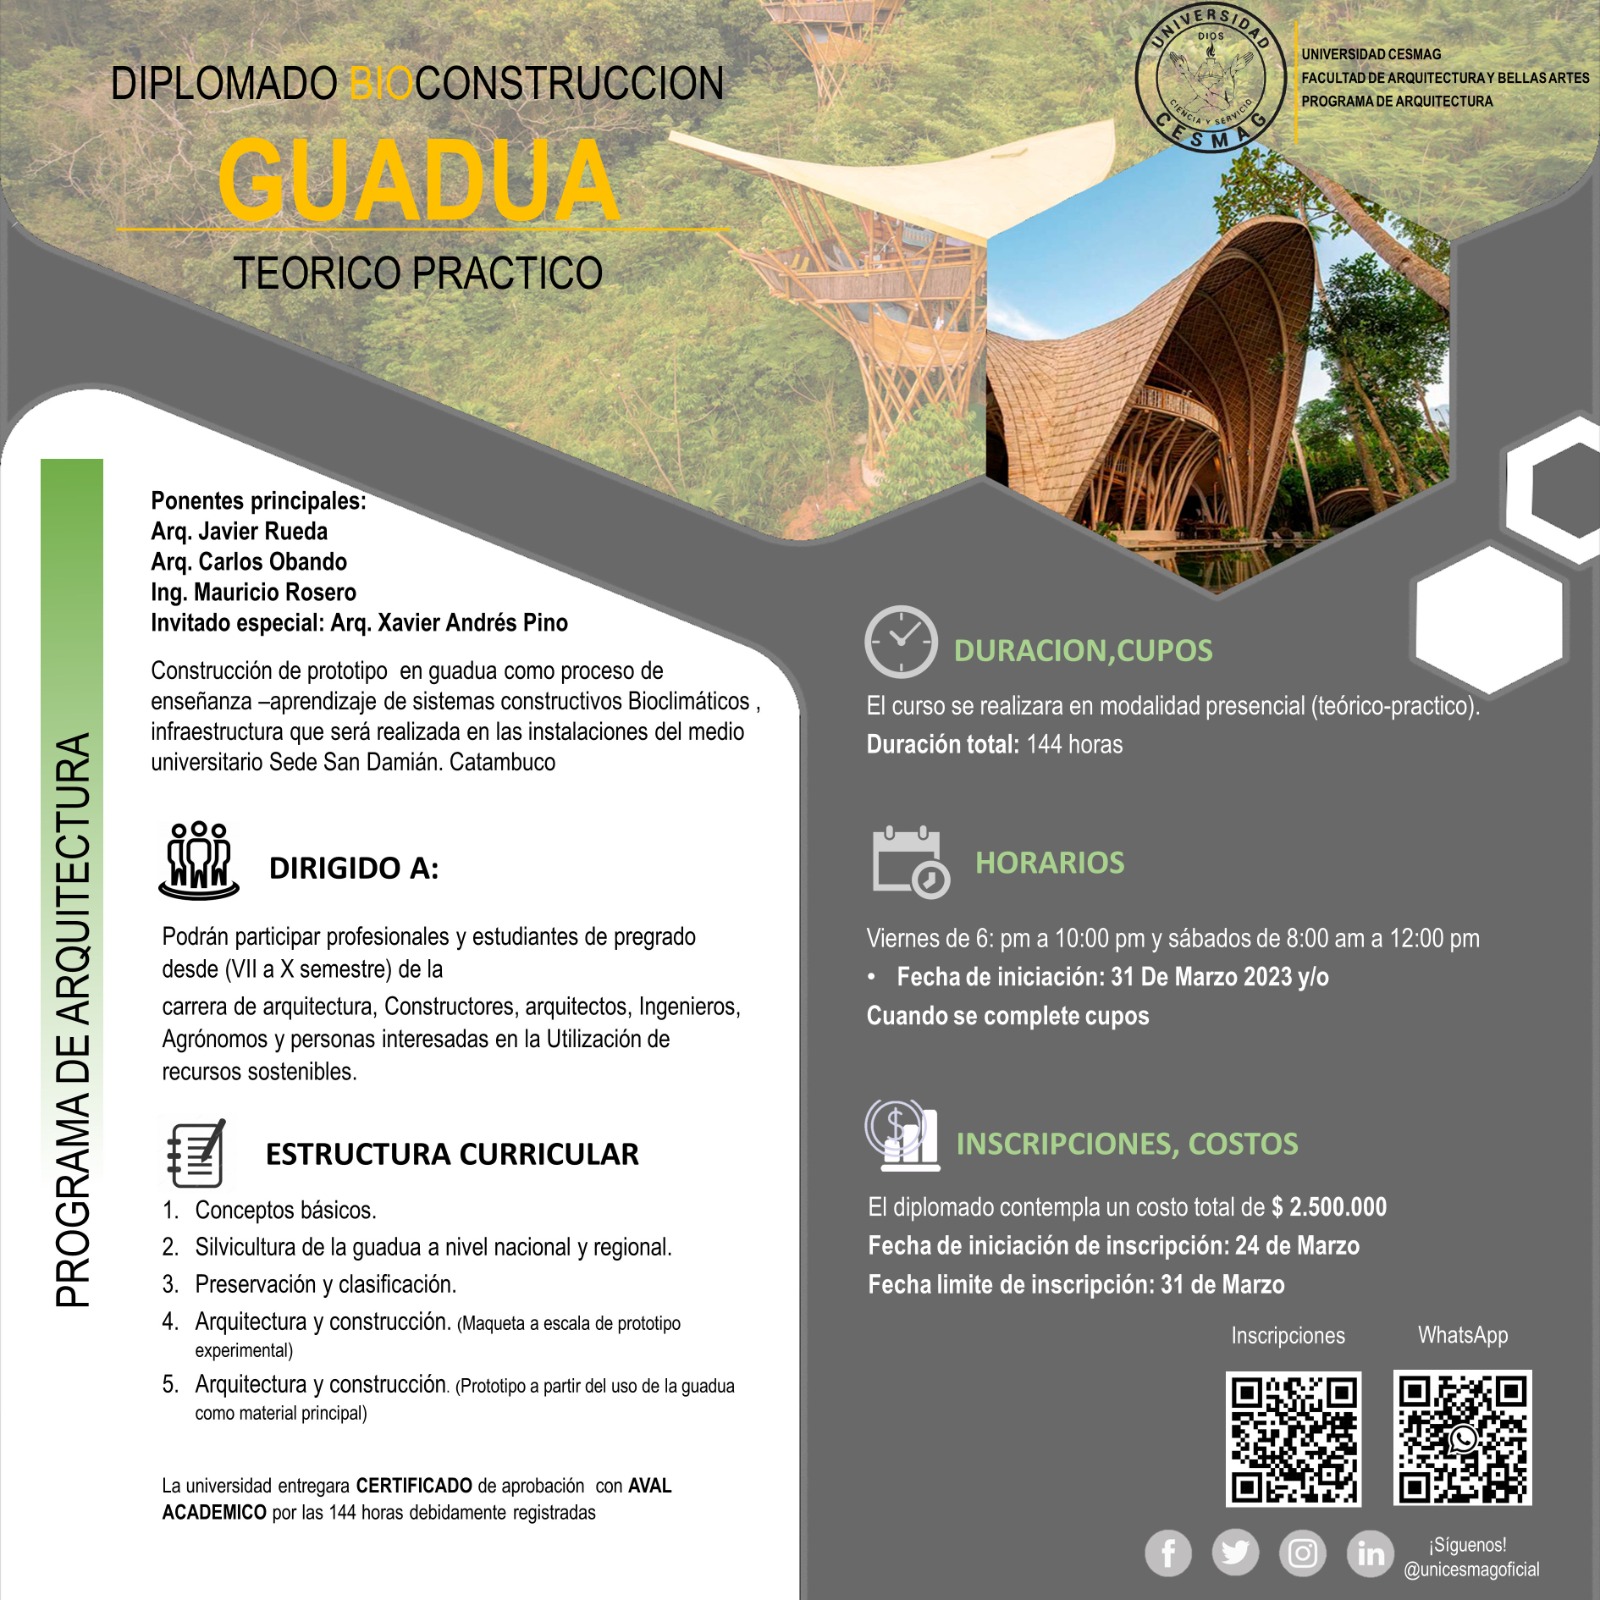 Diplomado en Bioconstrucción en Guadua